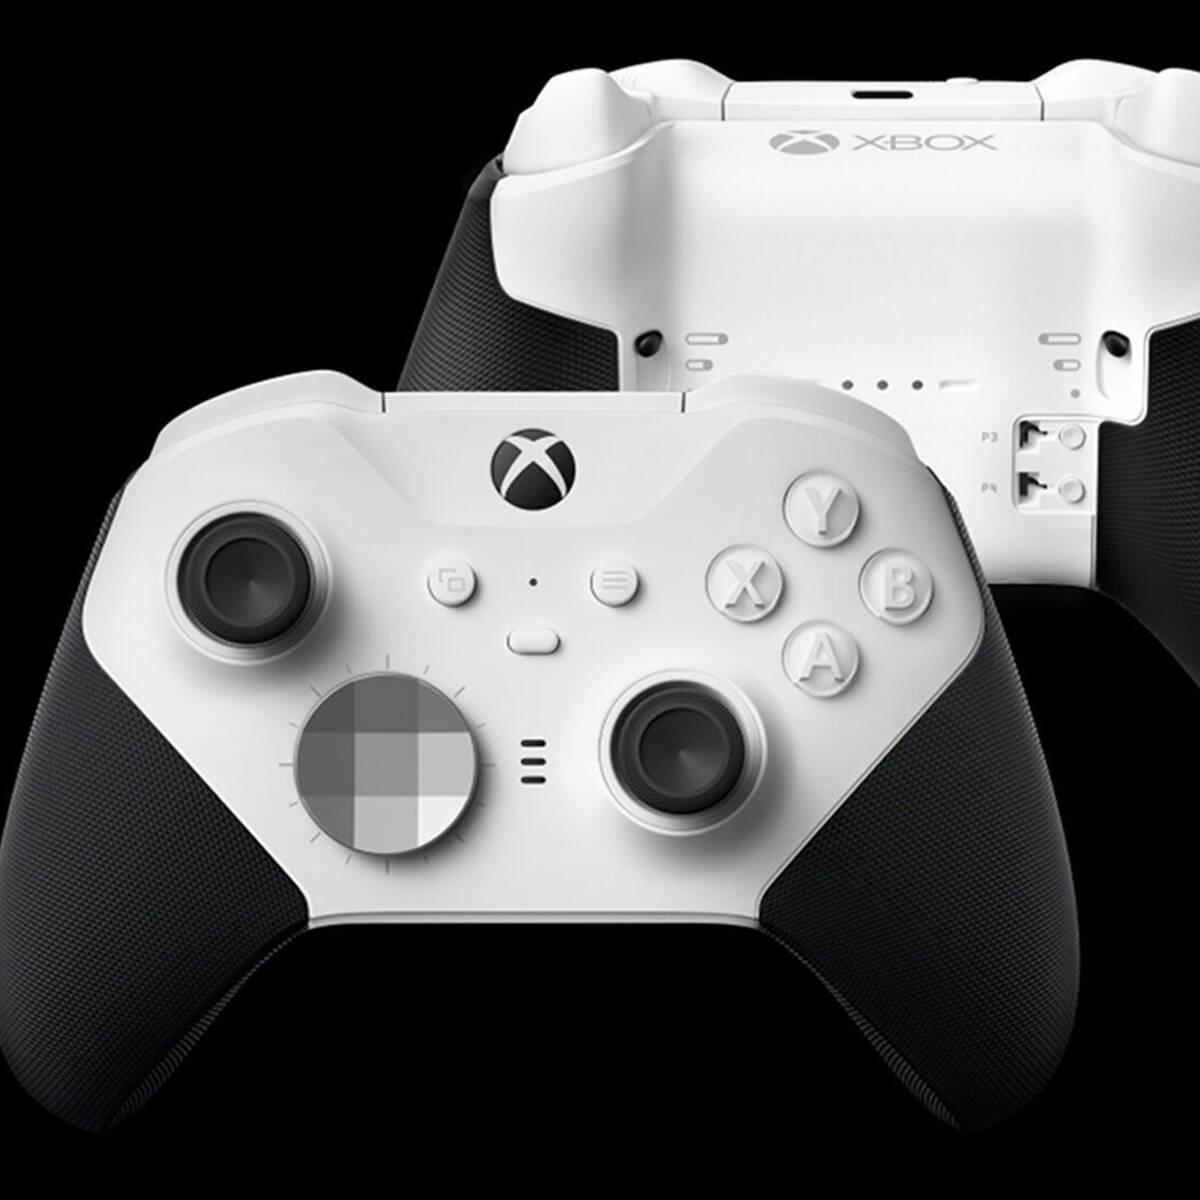 Xbox Elite Series 2 Core blanco: características y precio en